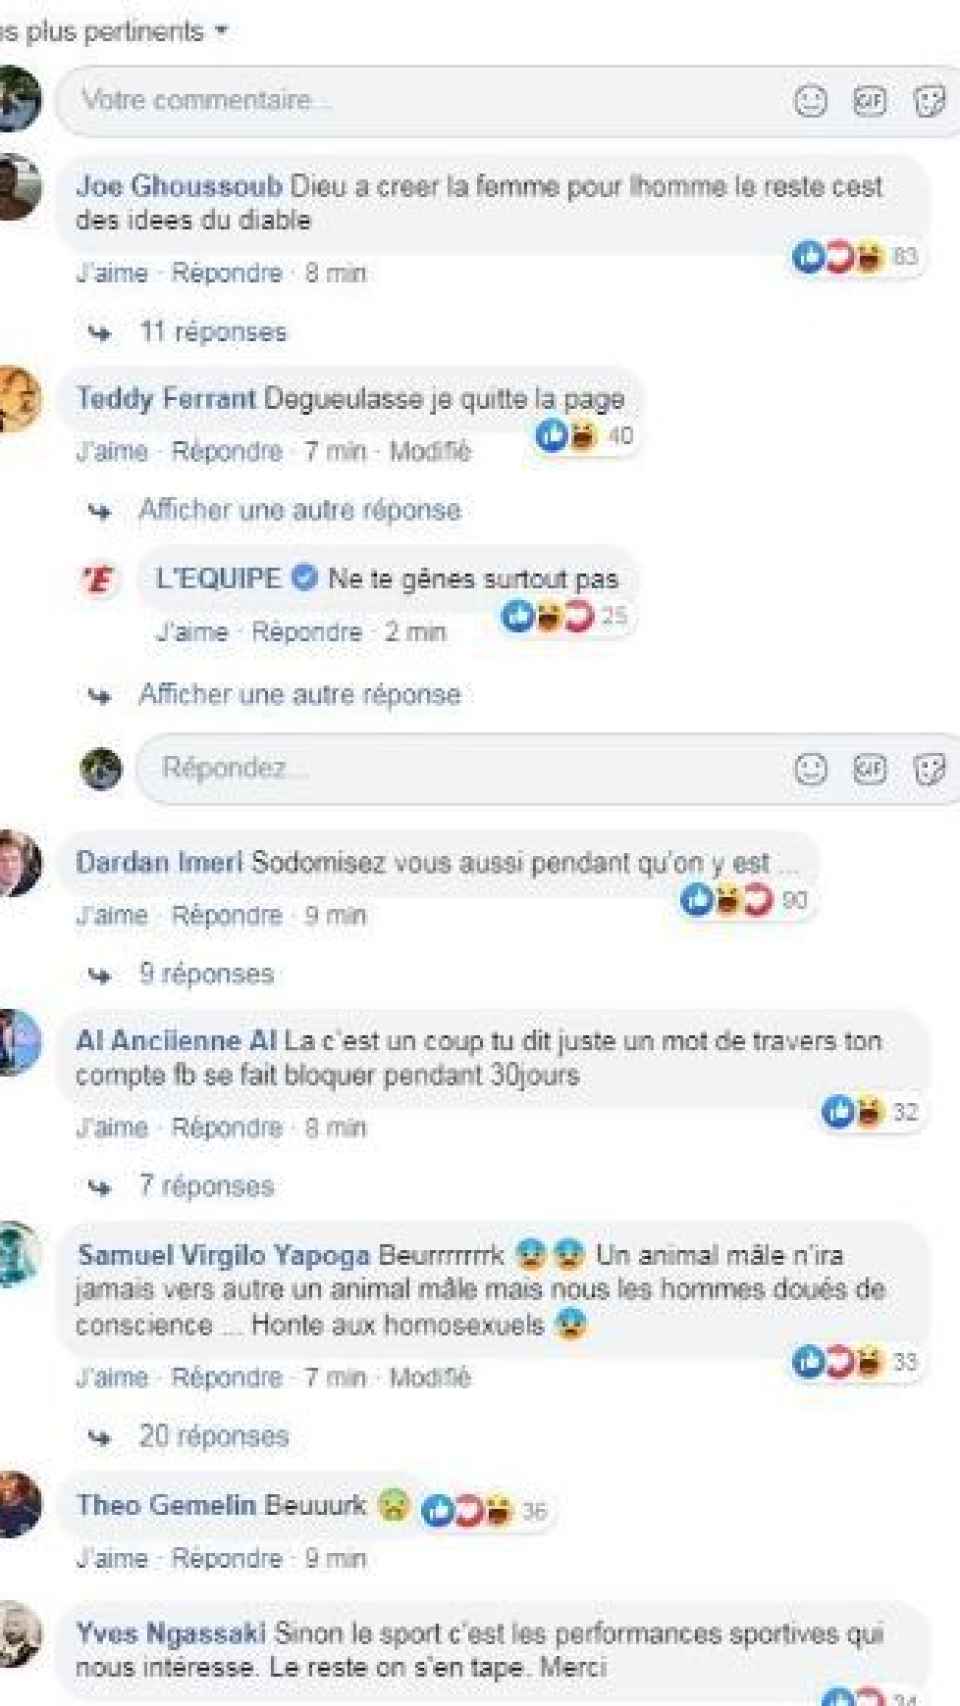 Los comentarios homófobos a raíz de la portada de L'Equipe